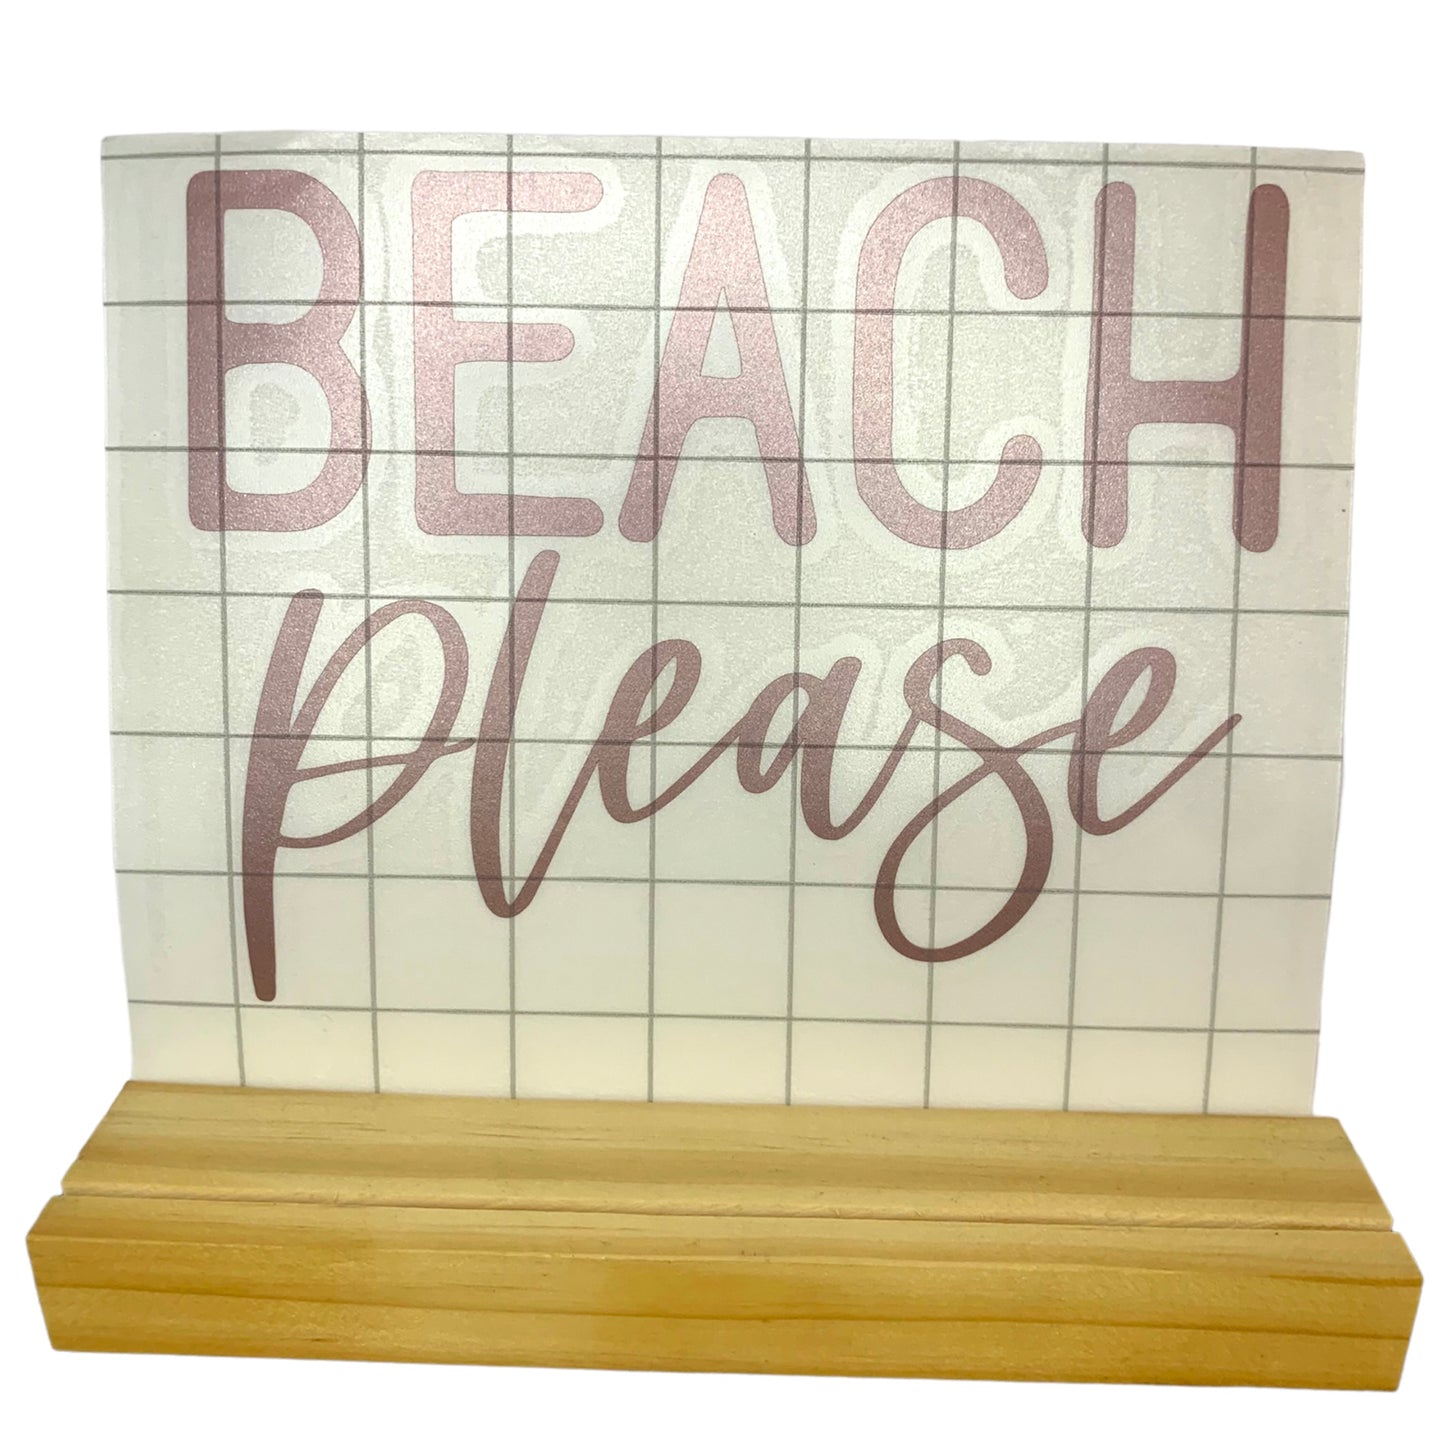 Beach Please decal